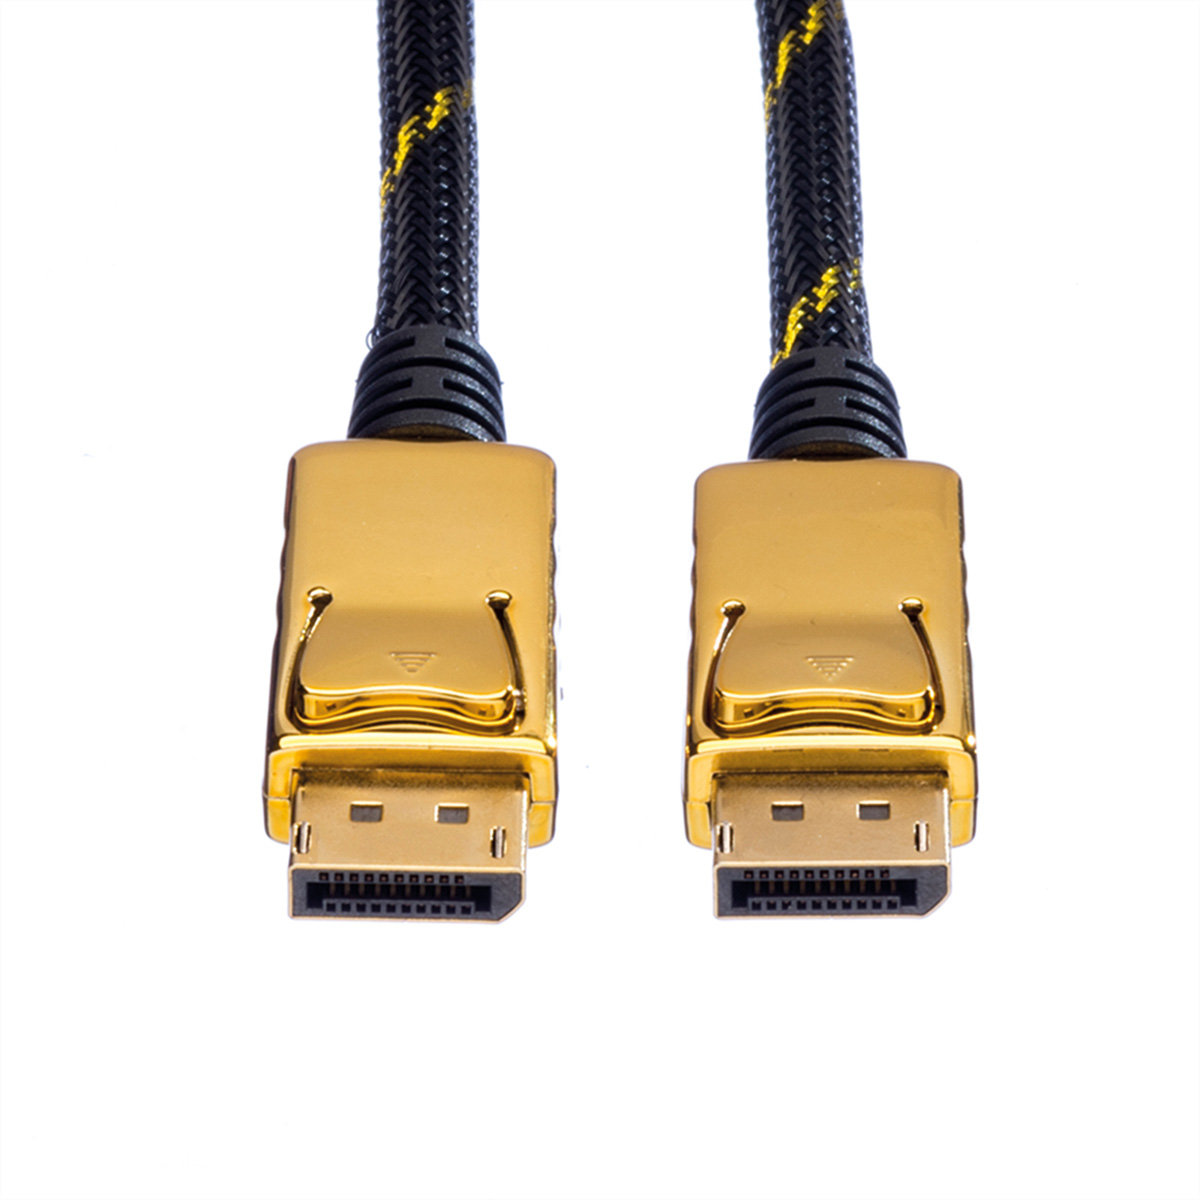 GOLD ROLINE DisplayPort Kabel, m 1 ST, ST DP DisplayPort Kabel, -